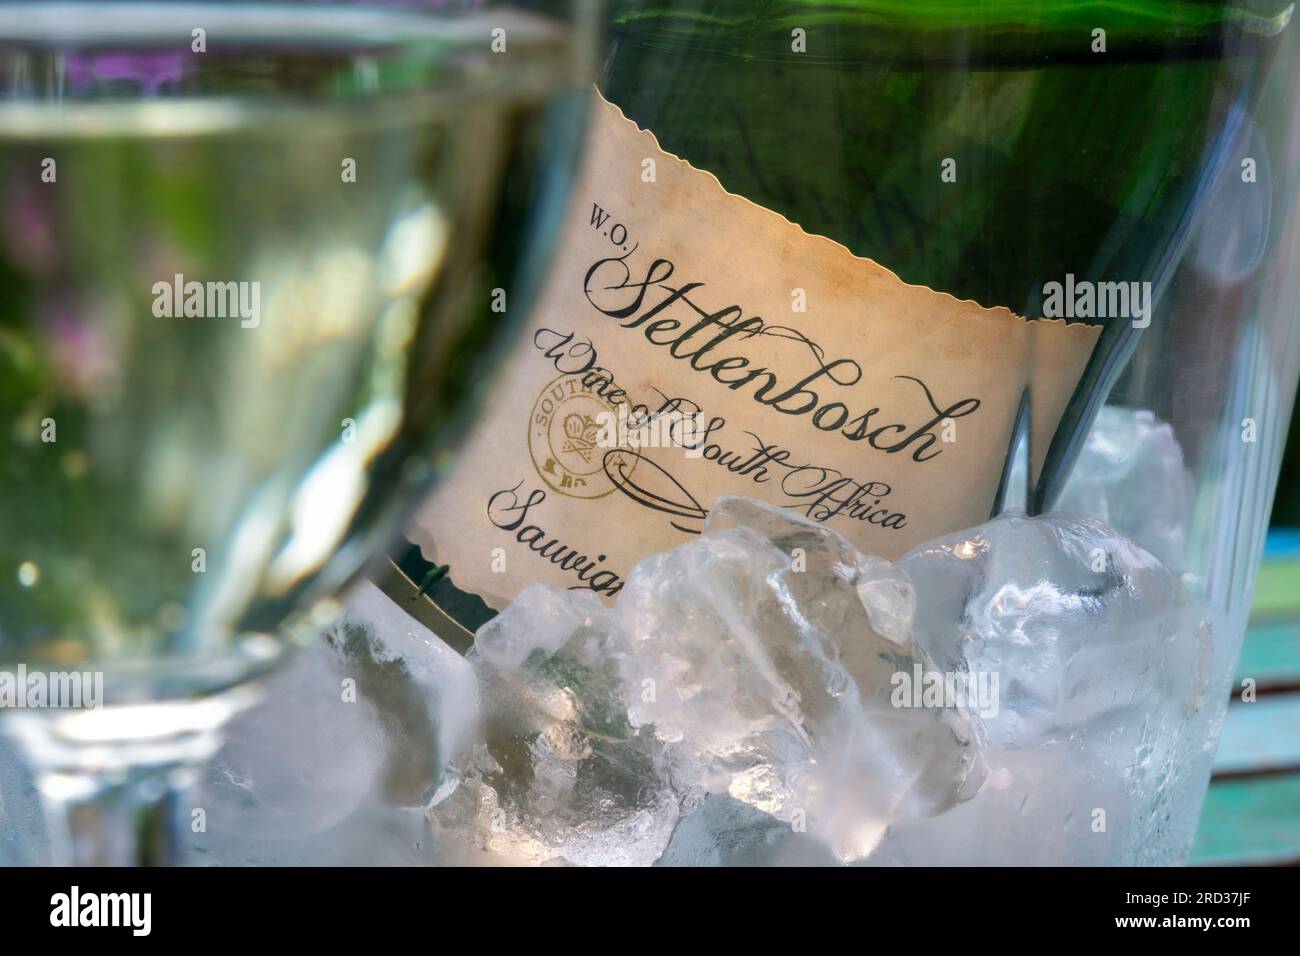 Stellenbosch Sud-Afrique vin blanc Sauvignon blanc bouteille et étiquette gros plan dans glacière avec verre à vin dans une situation ensoleillée de jardin en plein air Banque D'Images